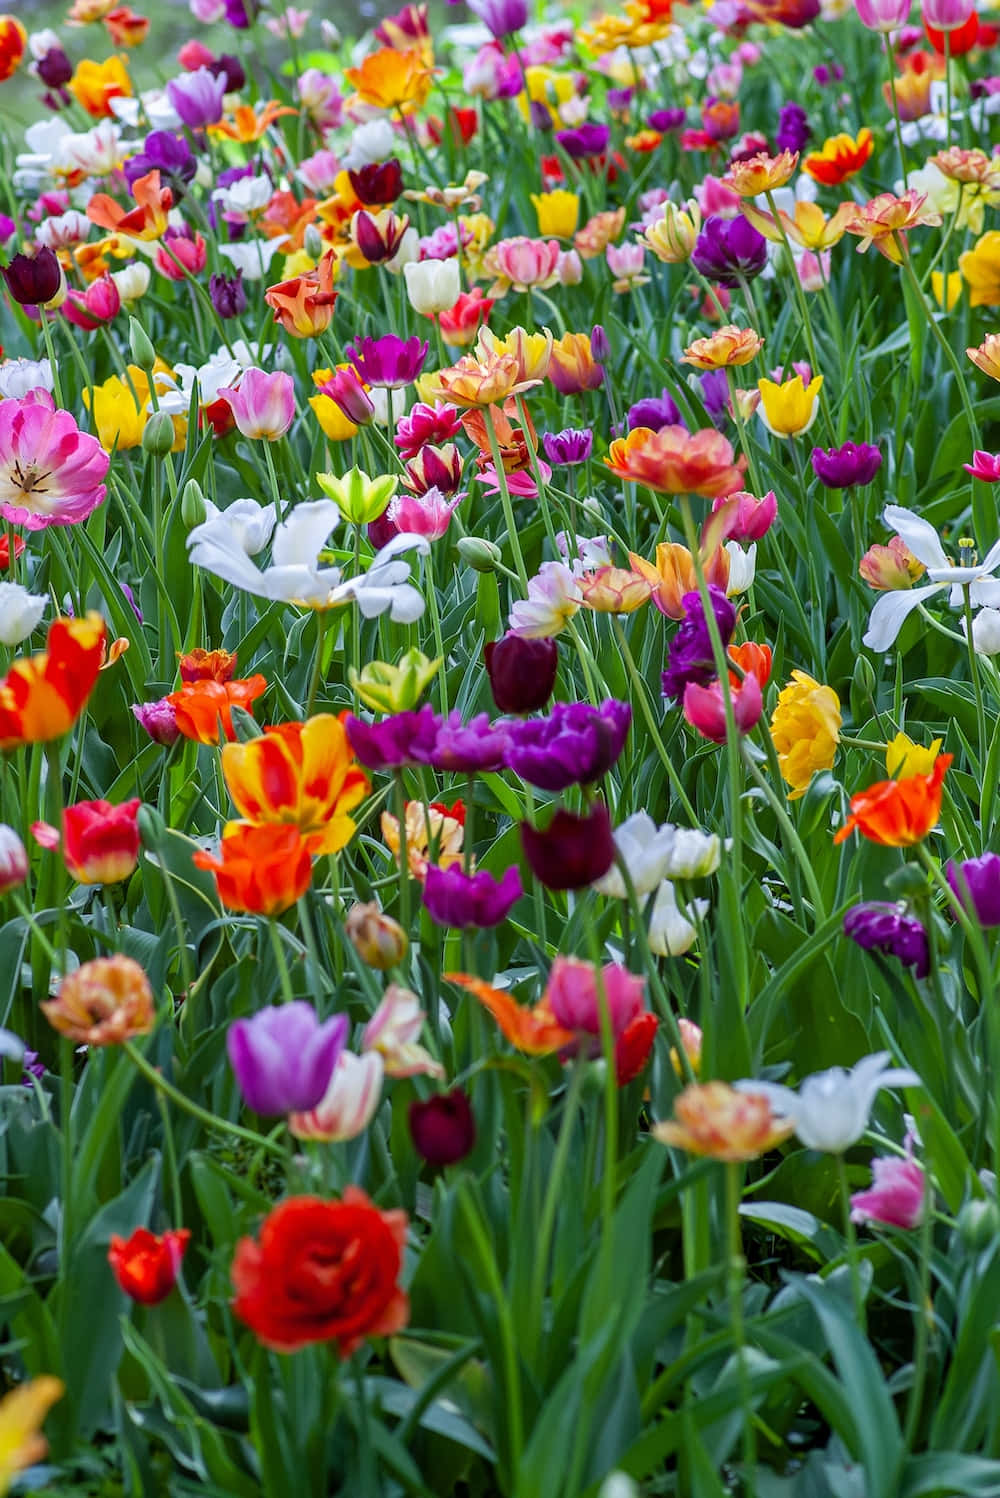 Fejre glæden af foråret med et farverigt mønster!